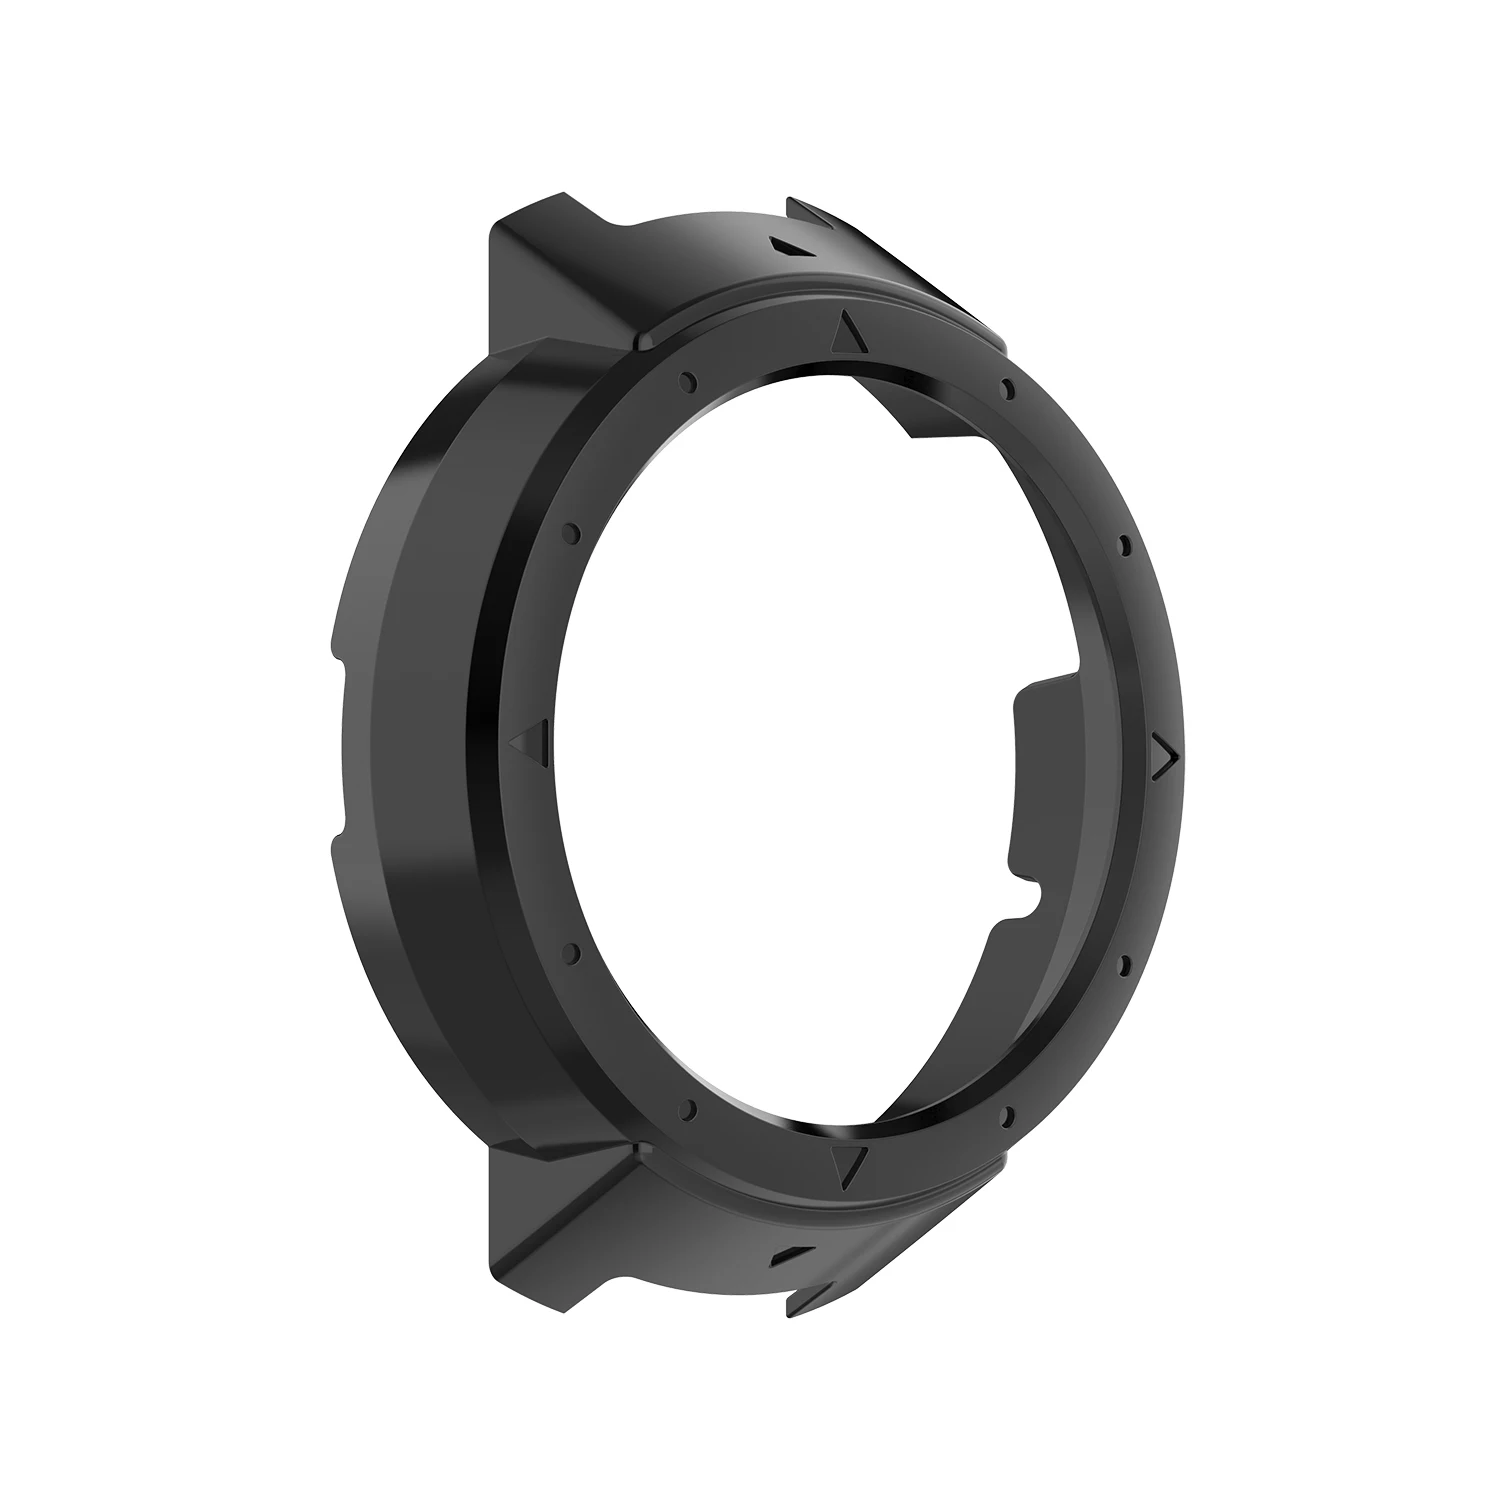 FIFATA чехол для Amazfit Verge часы защитная рамка чехол + ремешок для Xiaomi Huami Amazfit 3 Verge Смарт-часы аксессуары